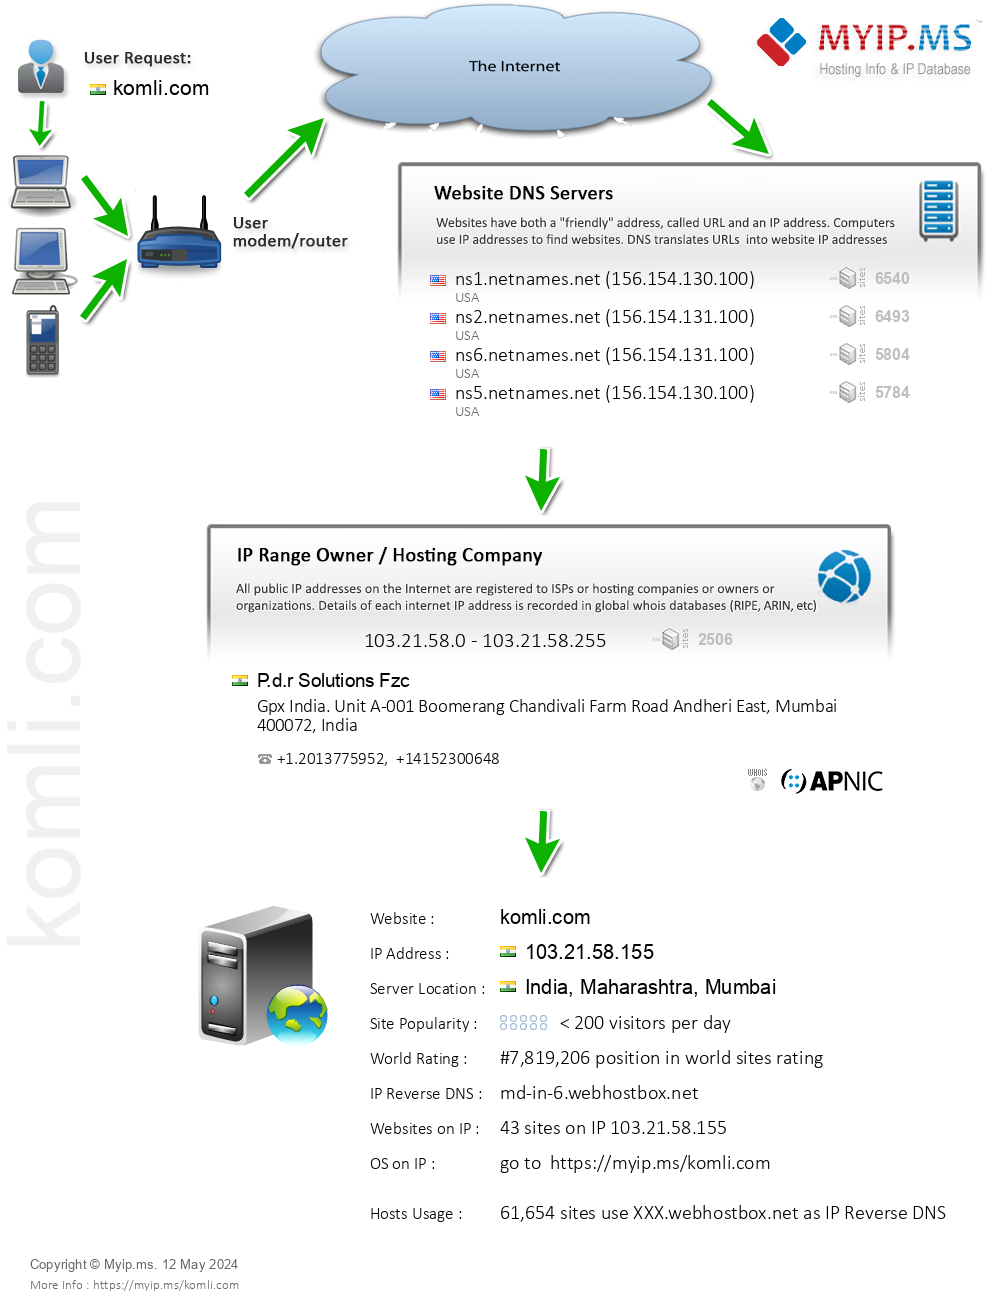 Komli.com - Website Hosting Visual IP Diagram